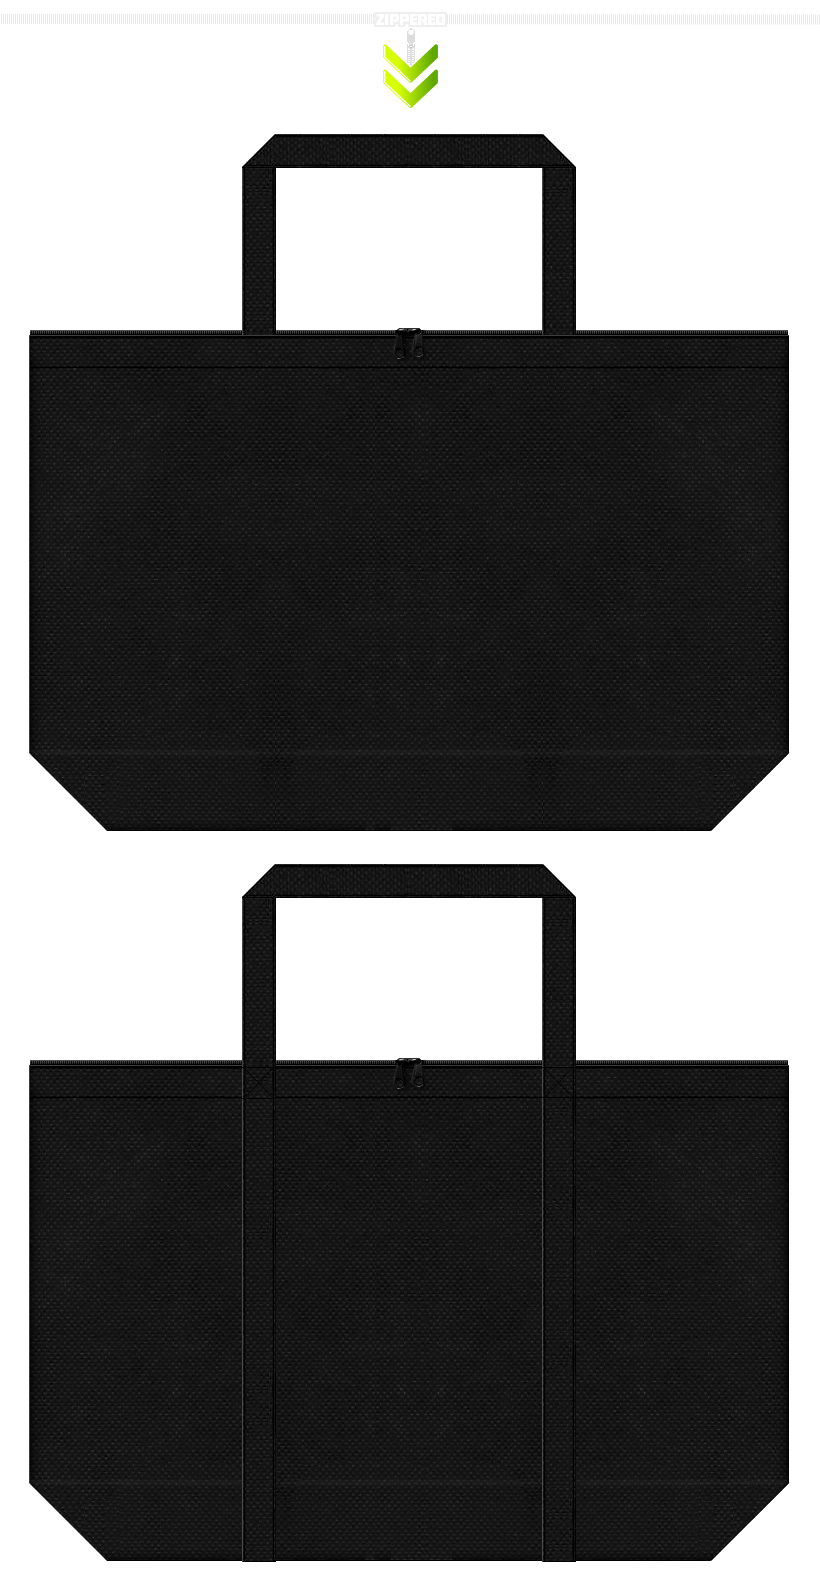 ファスナー付の台形型不織布バッグ黒色2種類